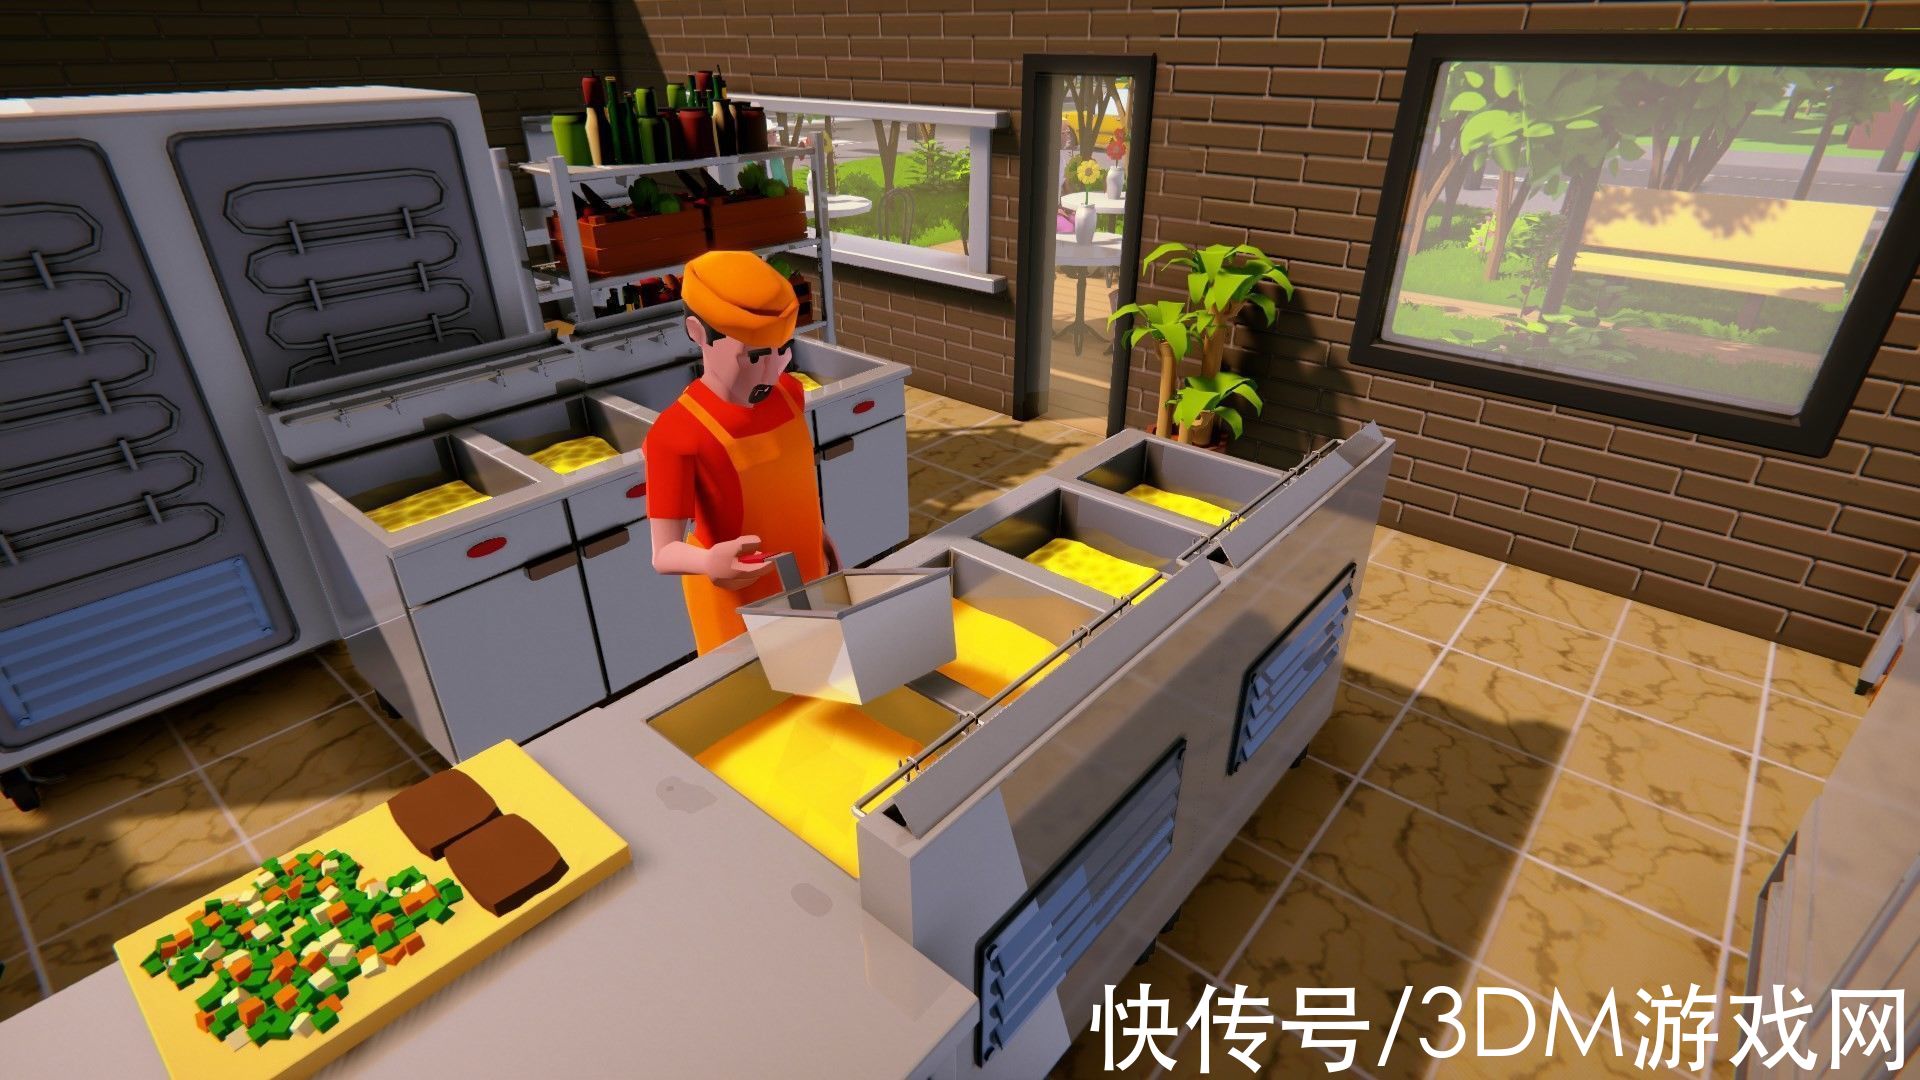 gtx|餐厅模拟游戏《灾难式厨房》今日在steam发售 支持中文